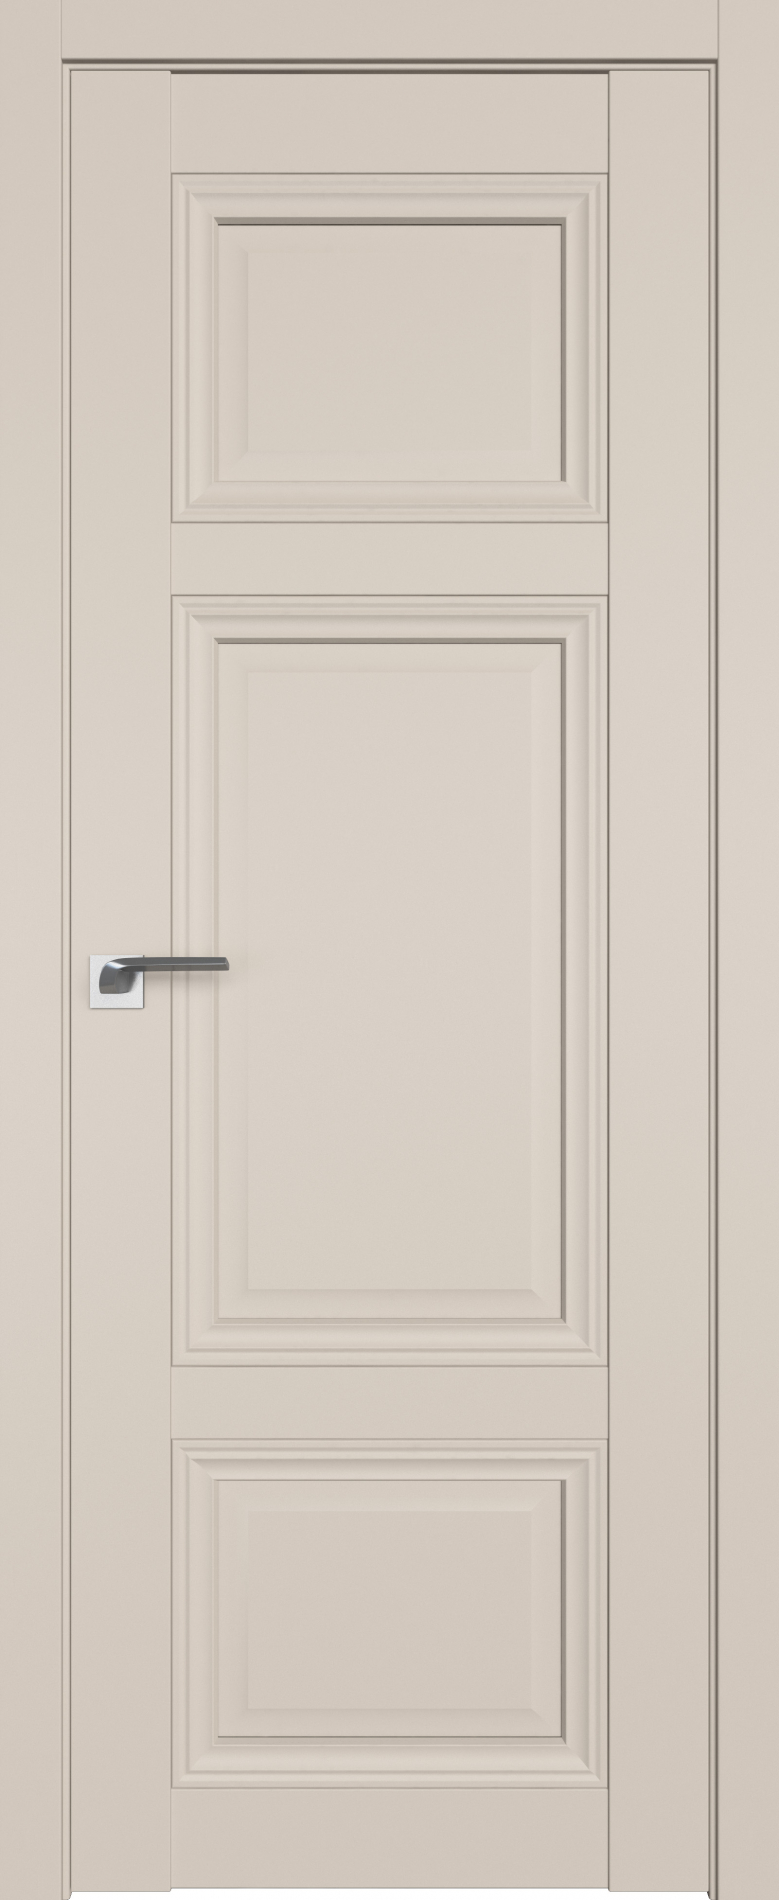 межкомнатные двери  Profil Doors 2.104U санд